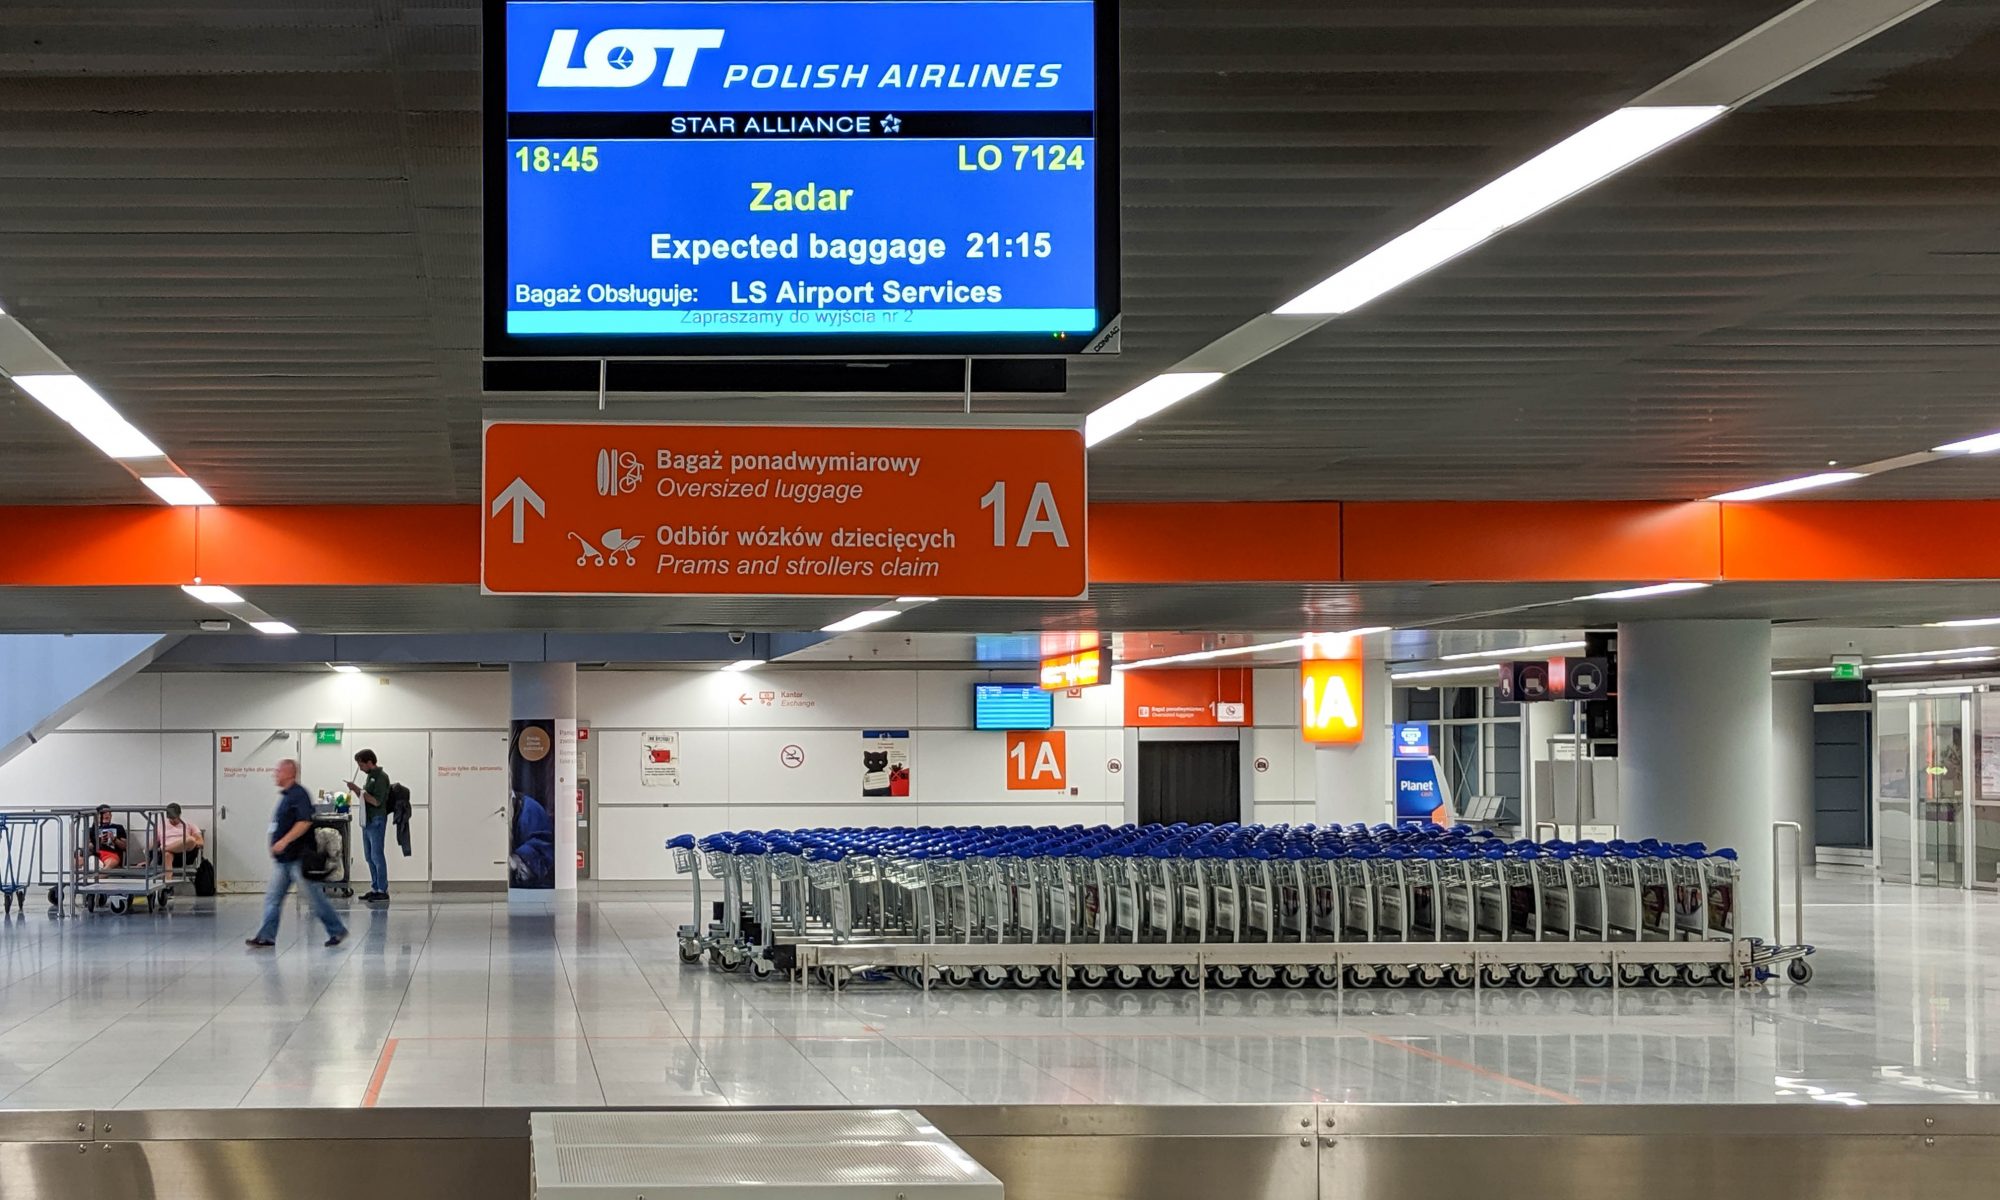 Lotnisko Chopina - Bagaż ponadwymiarowy,Odbiór wózków dziecięcych // Oversized luggage,Prams and strollers claim - 1A